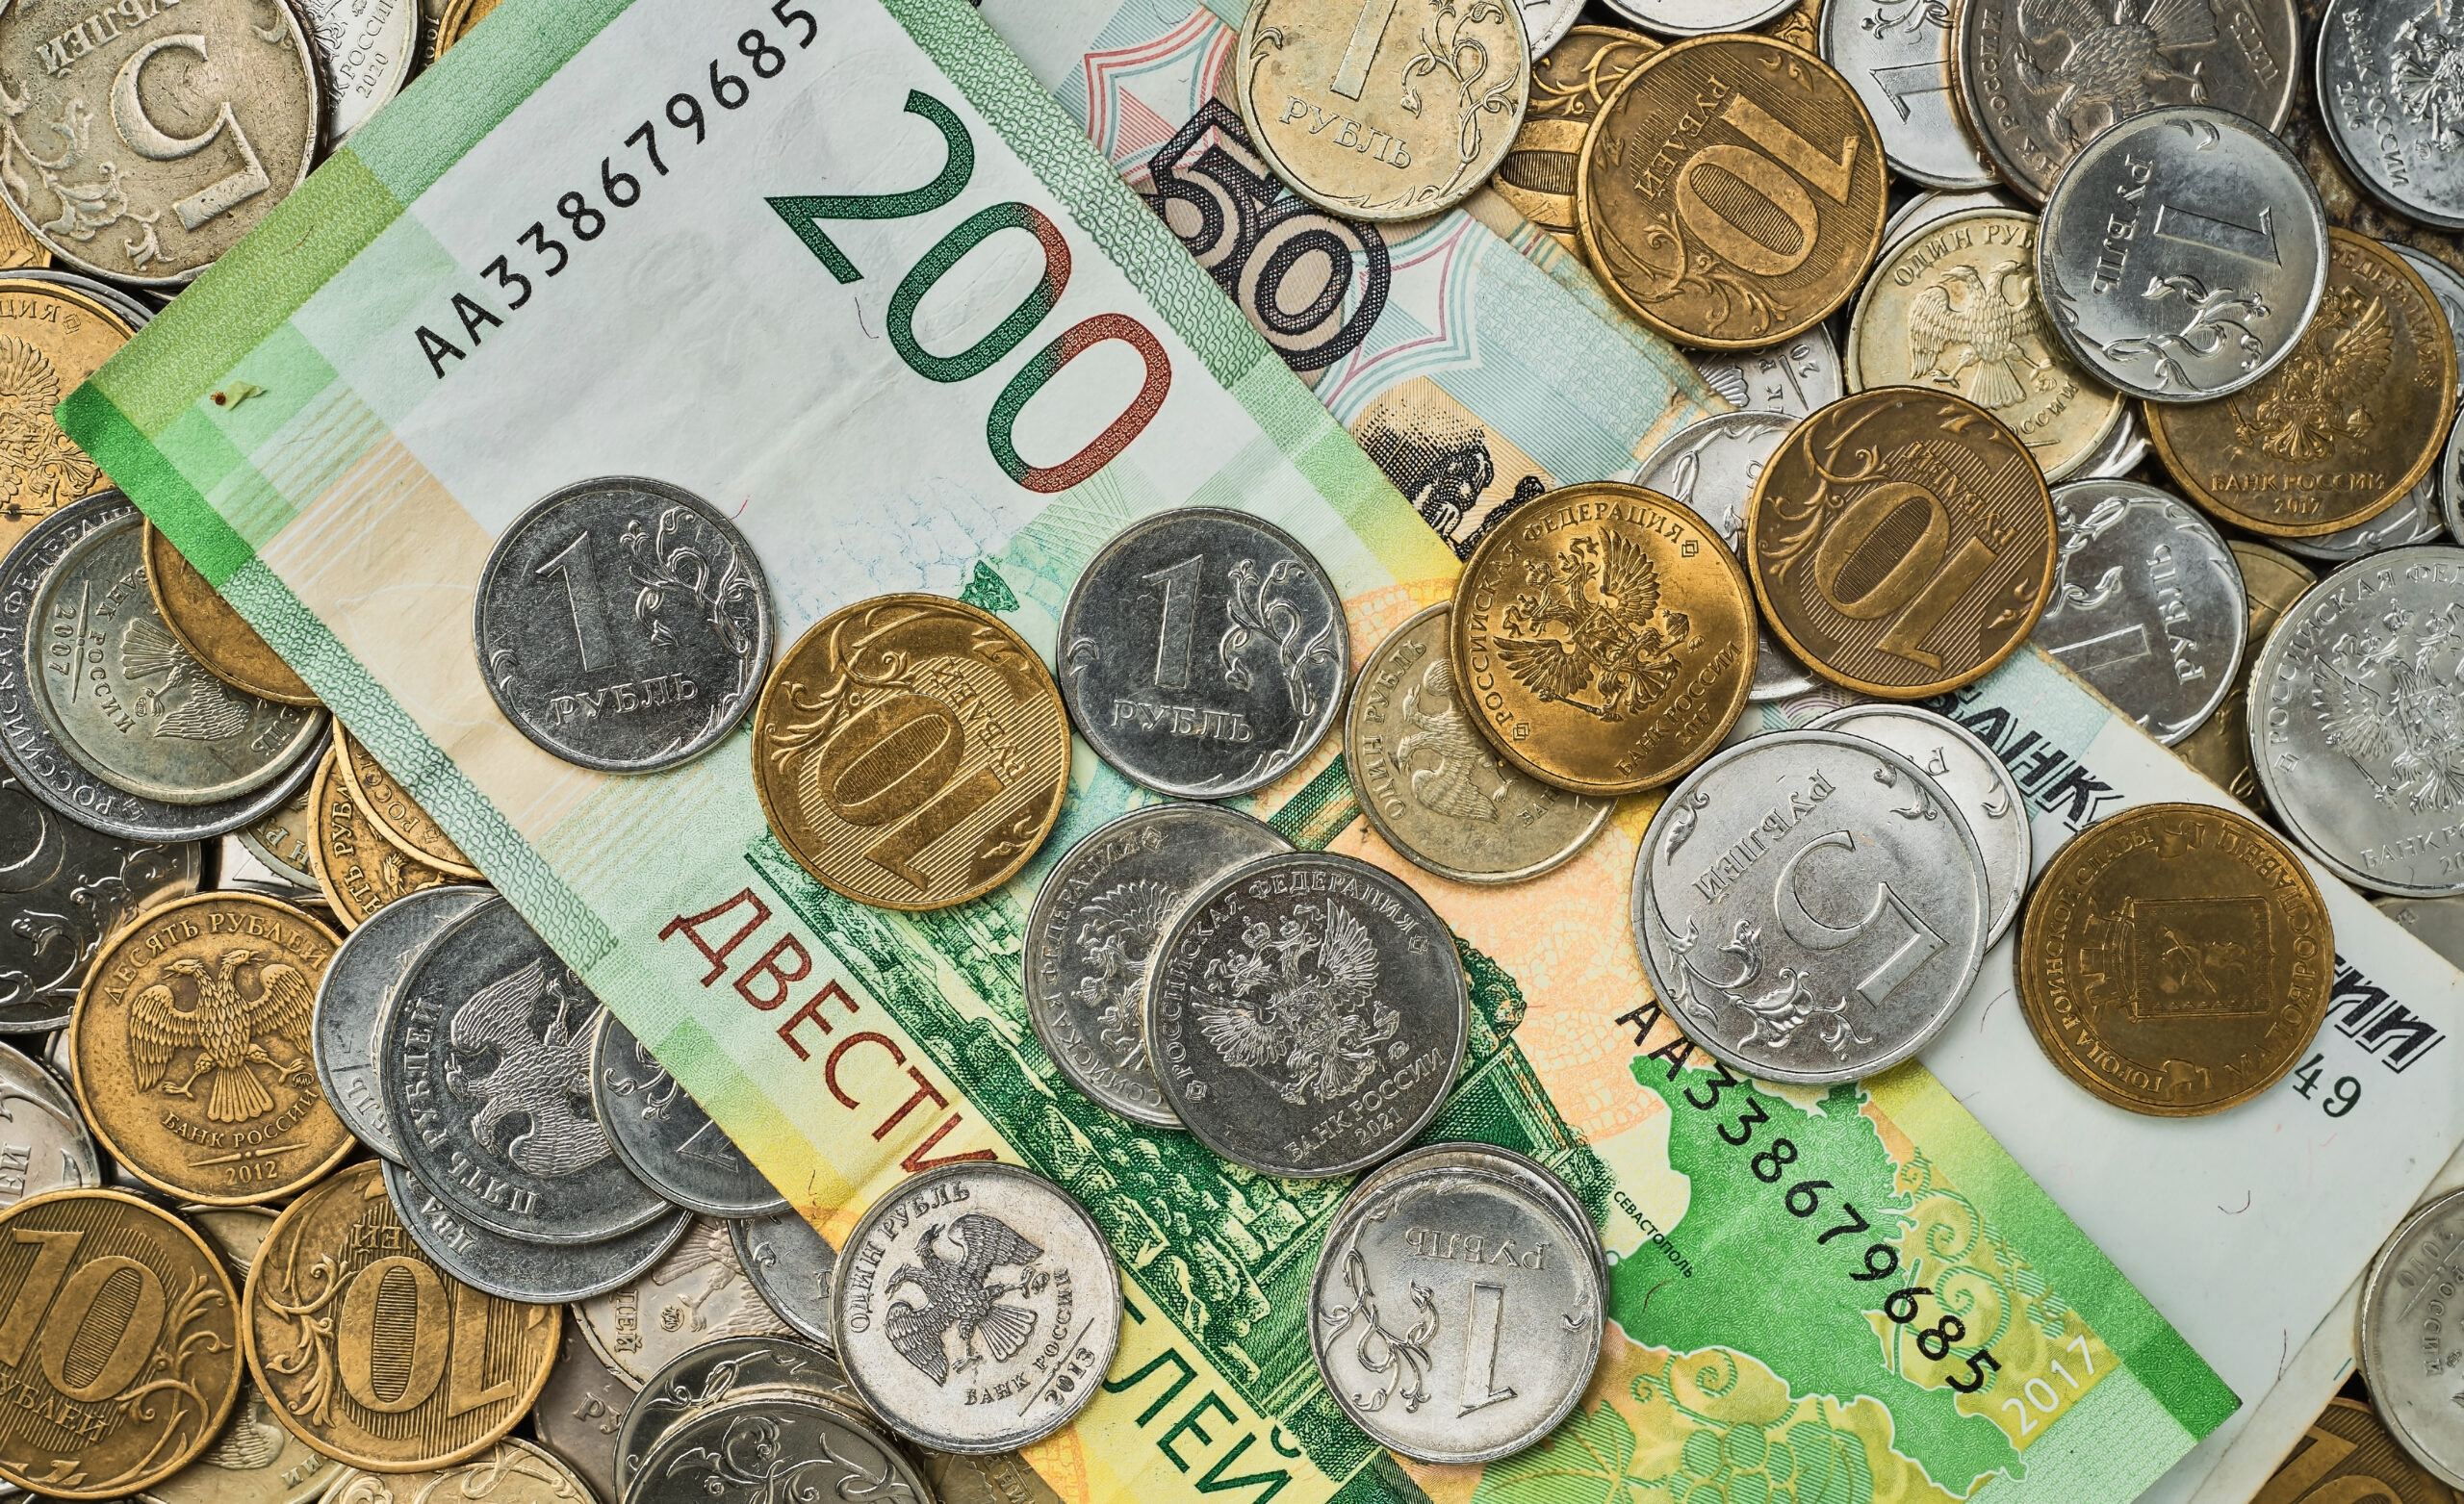 Dolar australijski (AUD) ma szansę na wzmocnienie